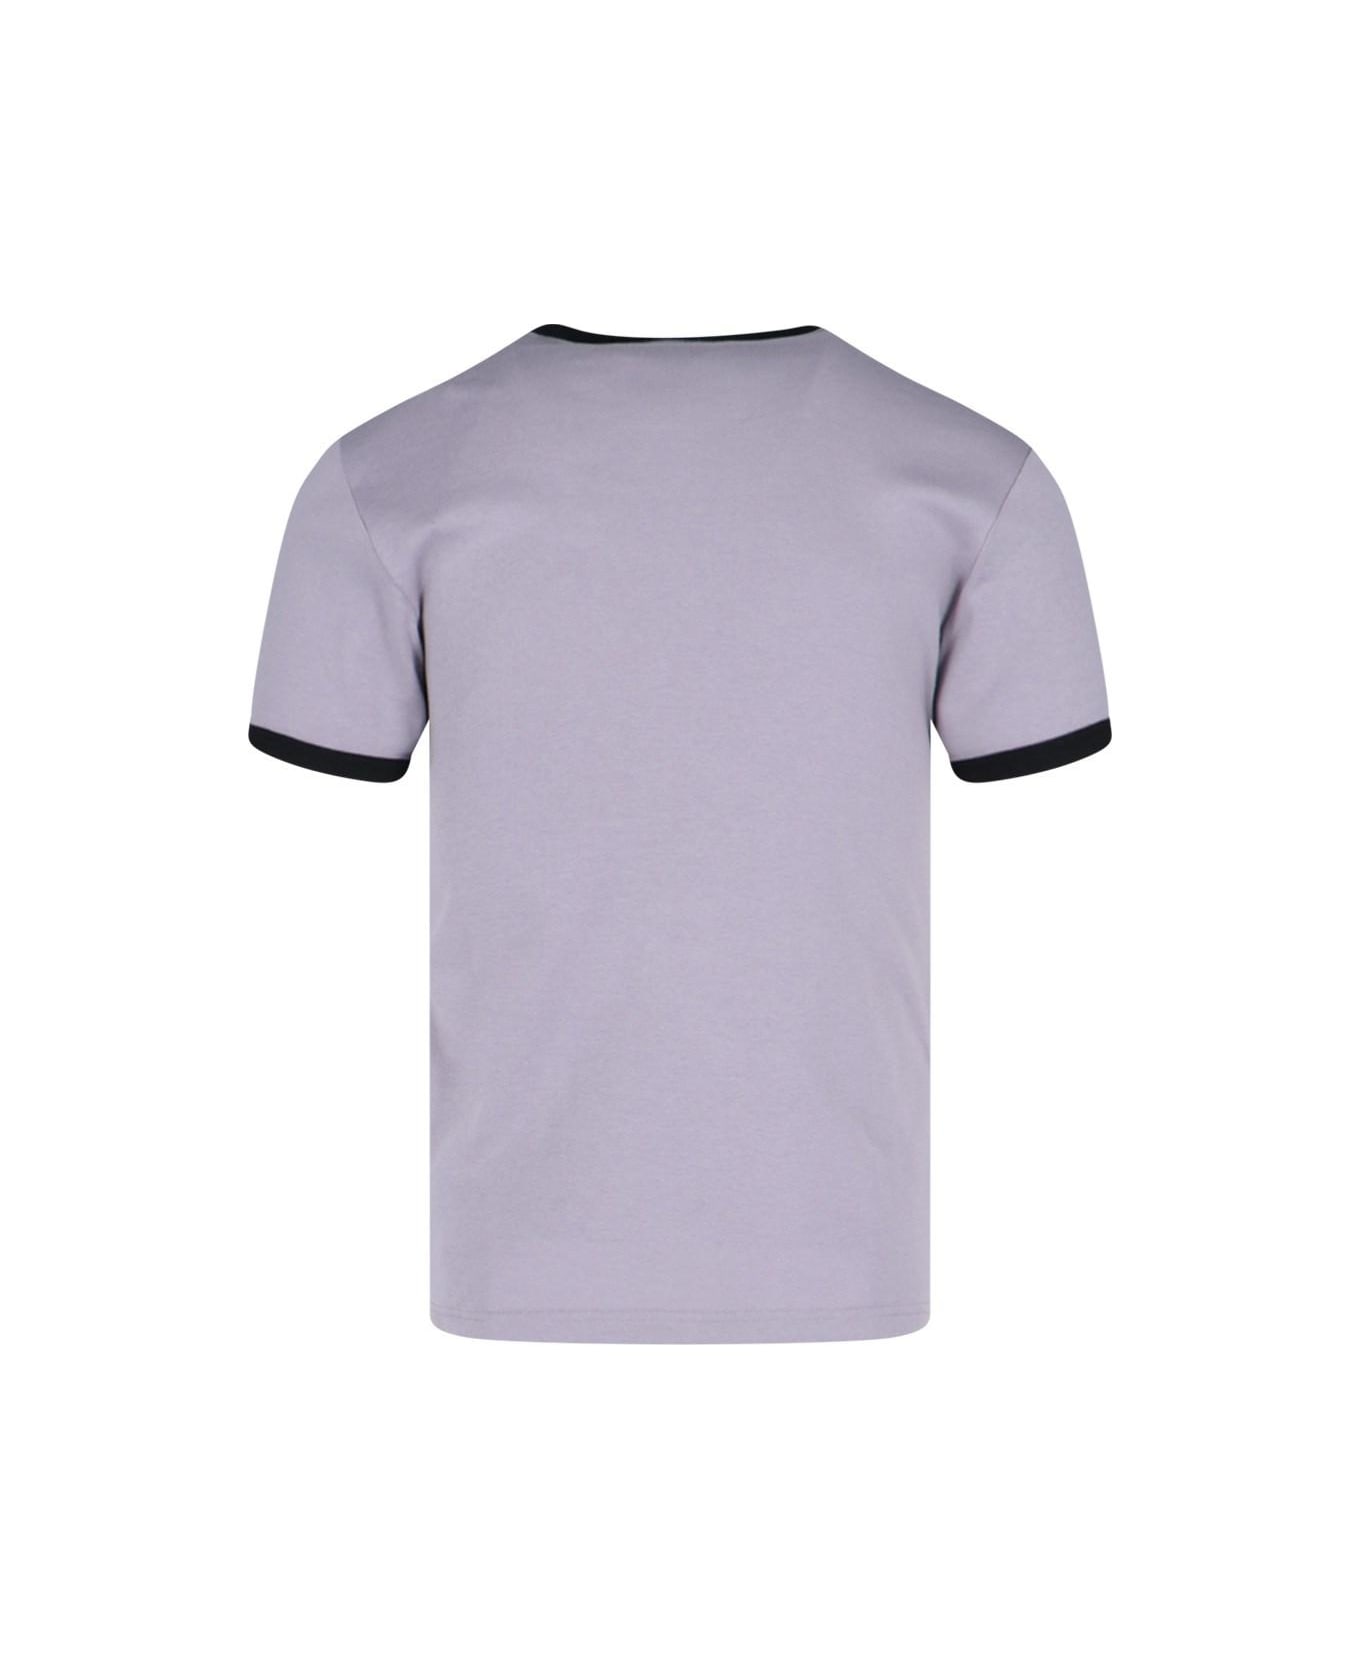 Courrèges 'contraste' T-shirt - Smocked Grey Black